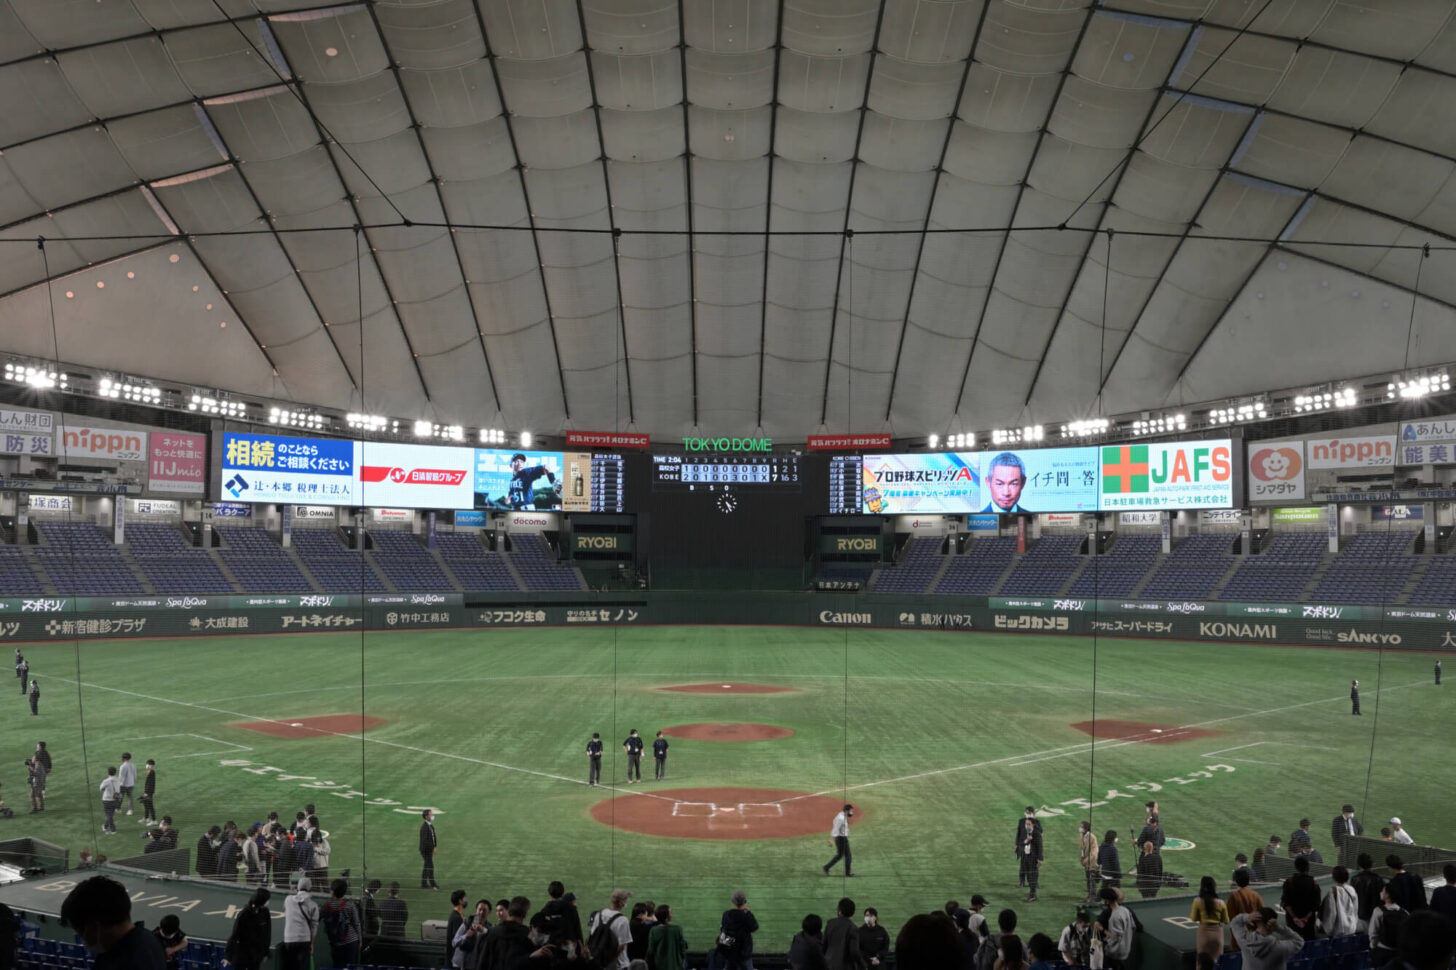 高校野球女子選抜 vs イチロー選抜 KOBE CHIBEN 東京ドーム